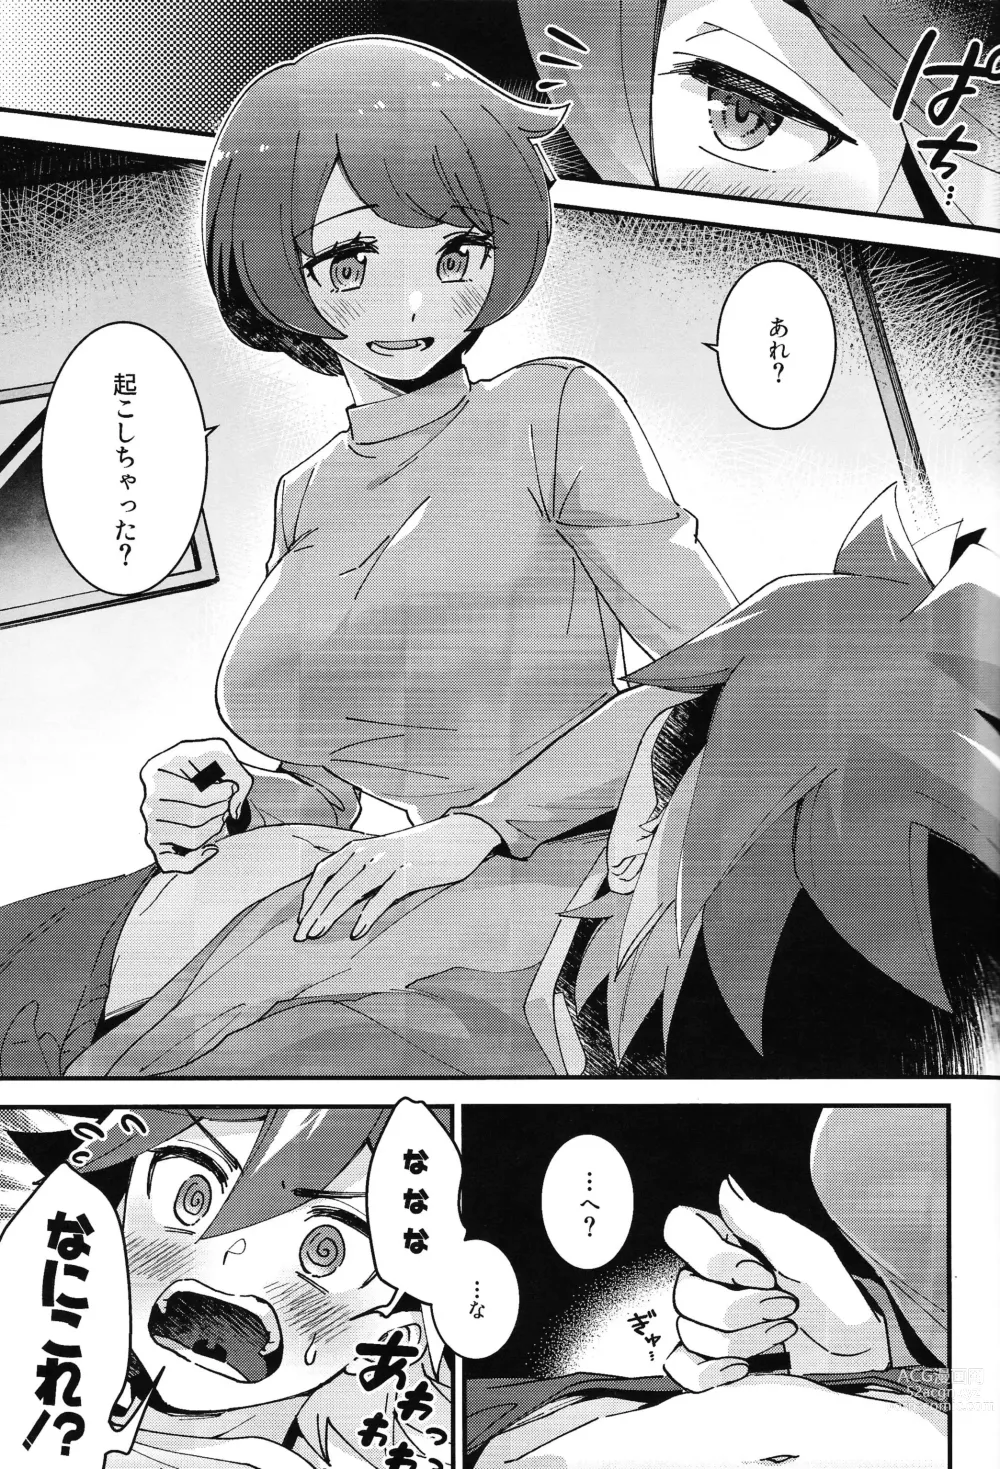 Page 3 of doujinshi Sonna Otoshigoro.